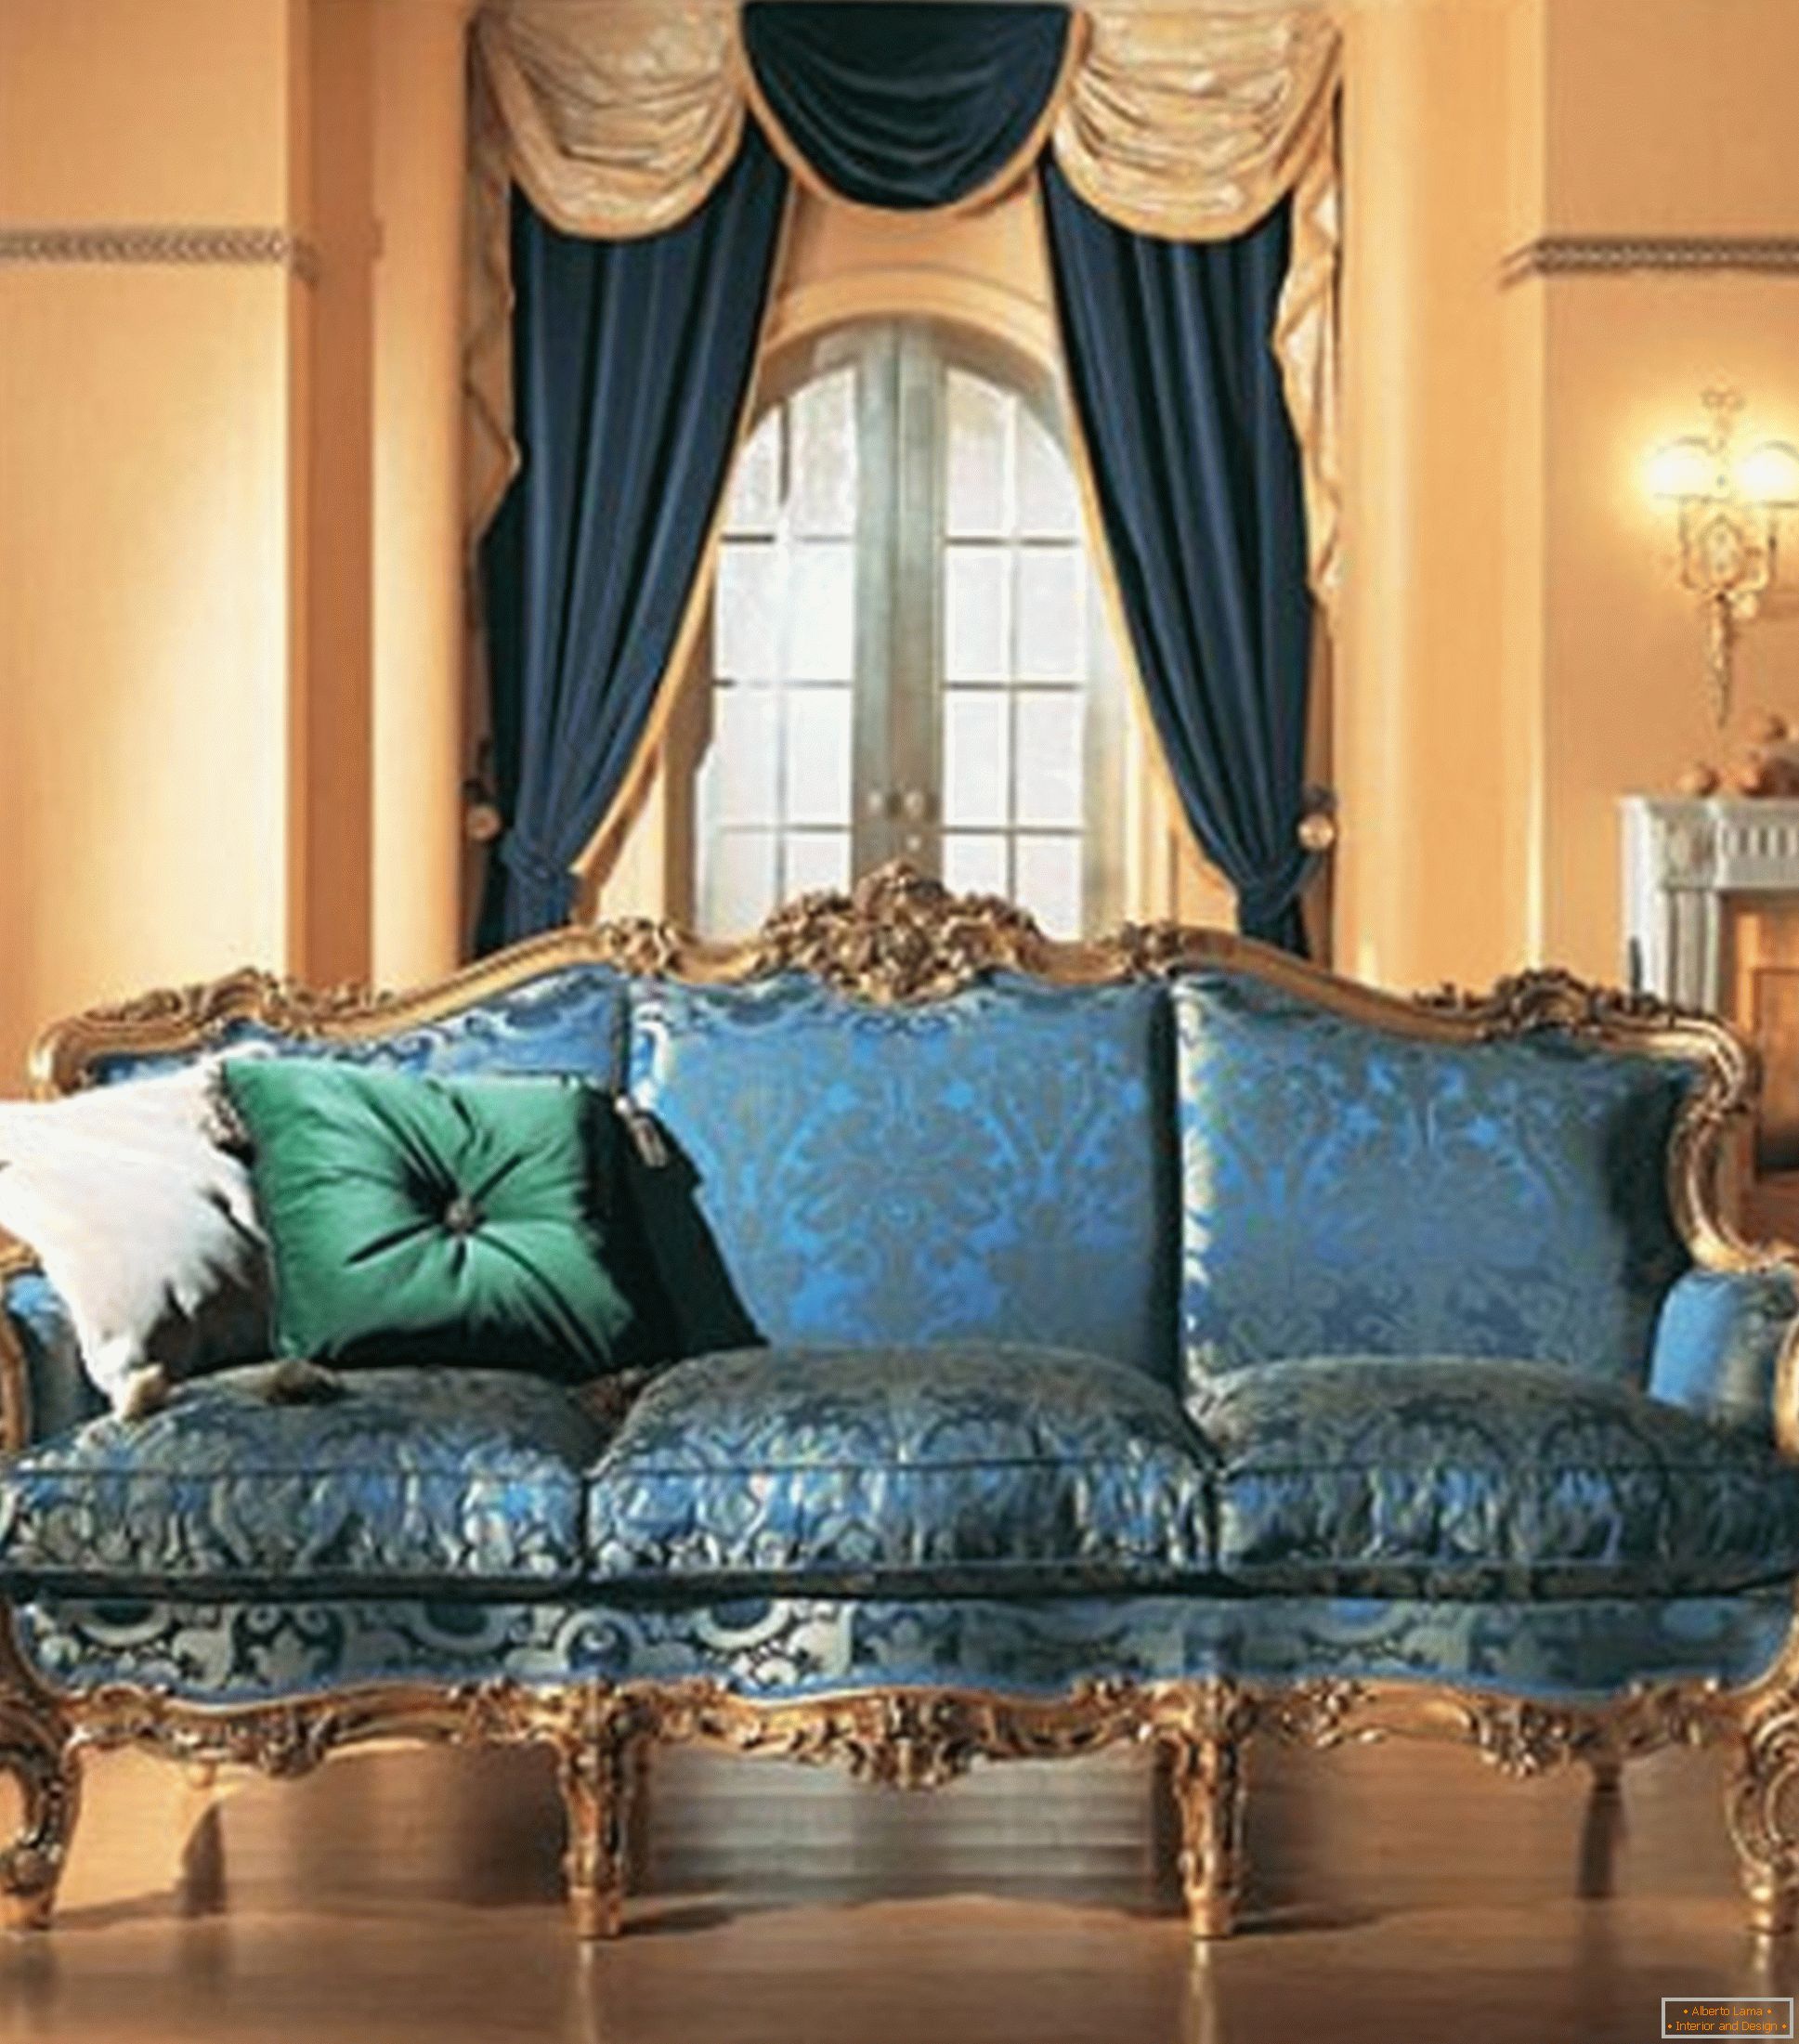 La combinación de colores contrastantes en la decoración de la sala de estar en el estilo barroco.